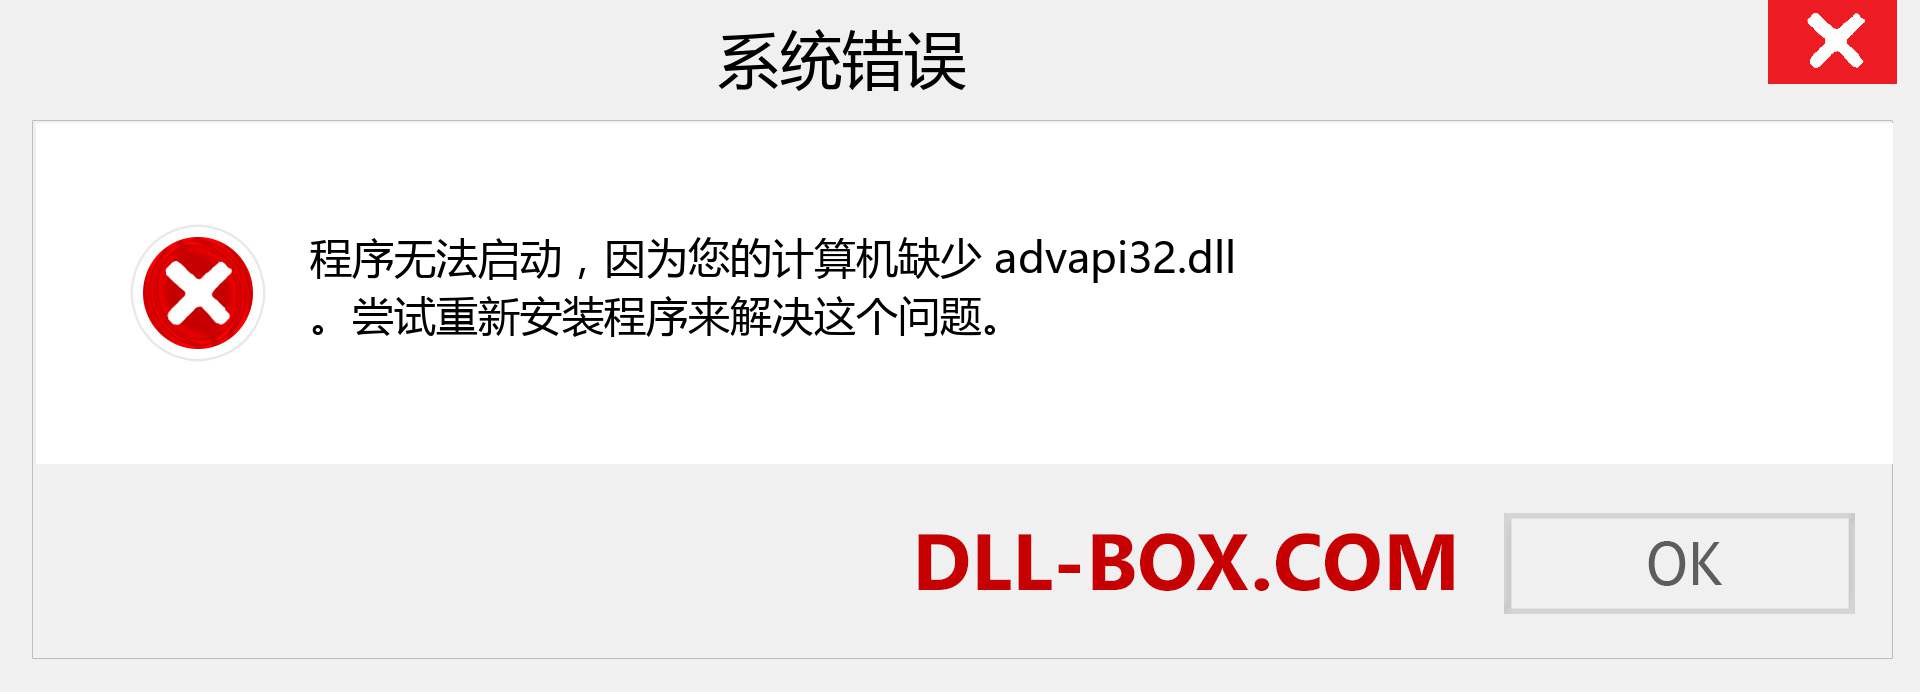 advapi32.dll 文件丢失？。 适用于 Windows 7、8、10 的下载 - 修复 Windows、照片、图像上的 advapi32 dll 丢失错误